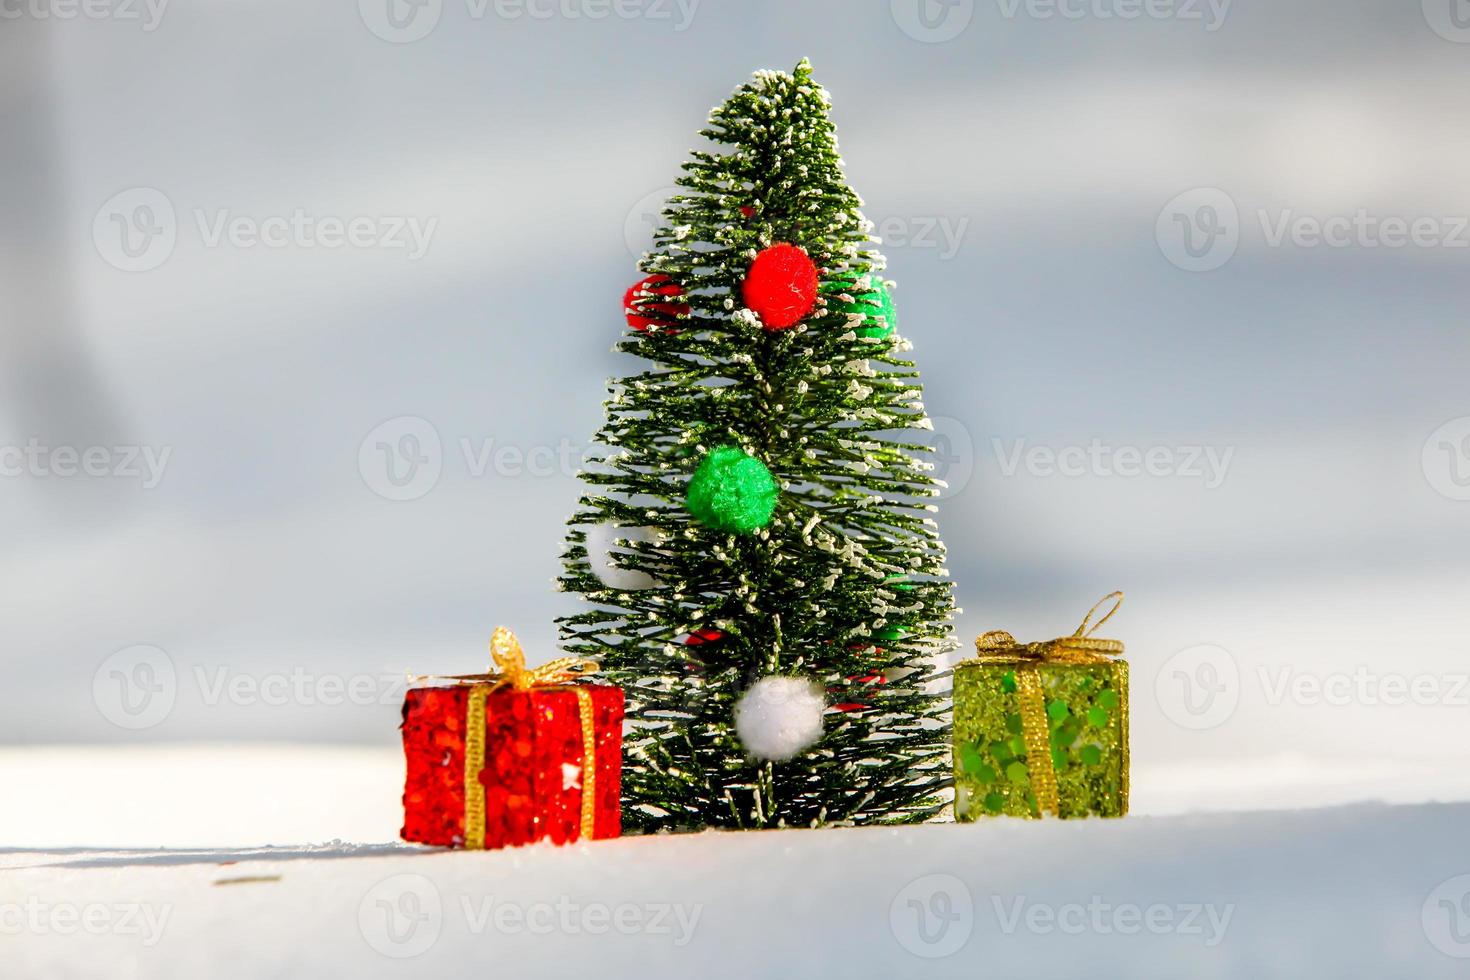 arbre de noël sur neige avec boîte cadeau rouge et verte photo